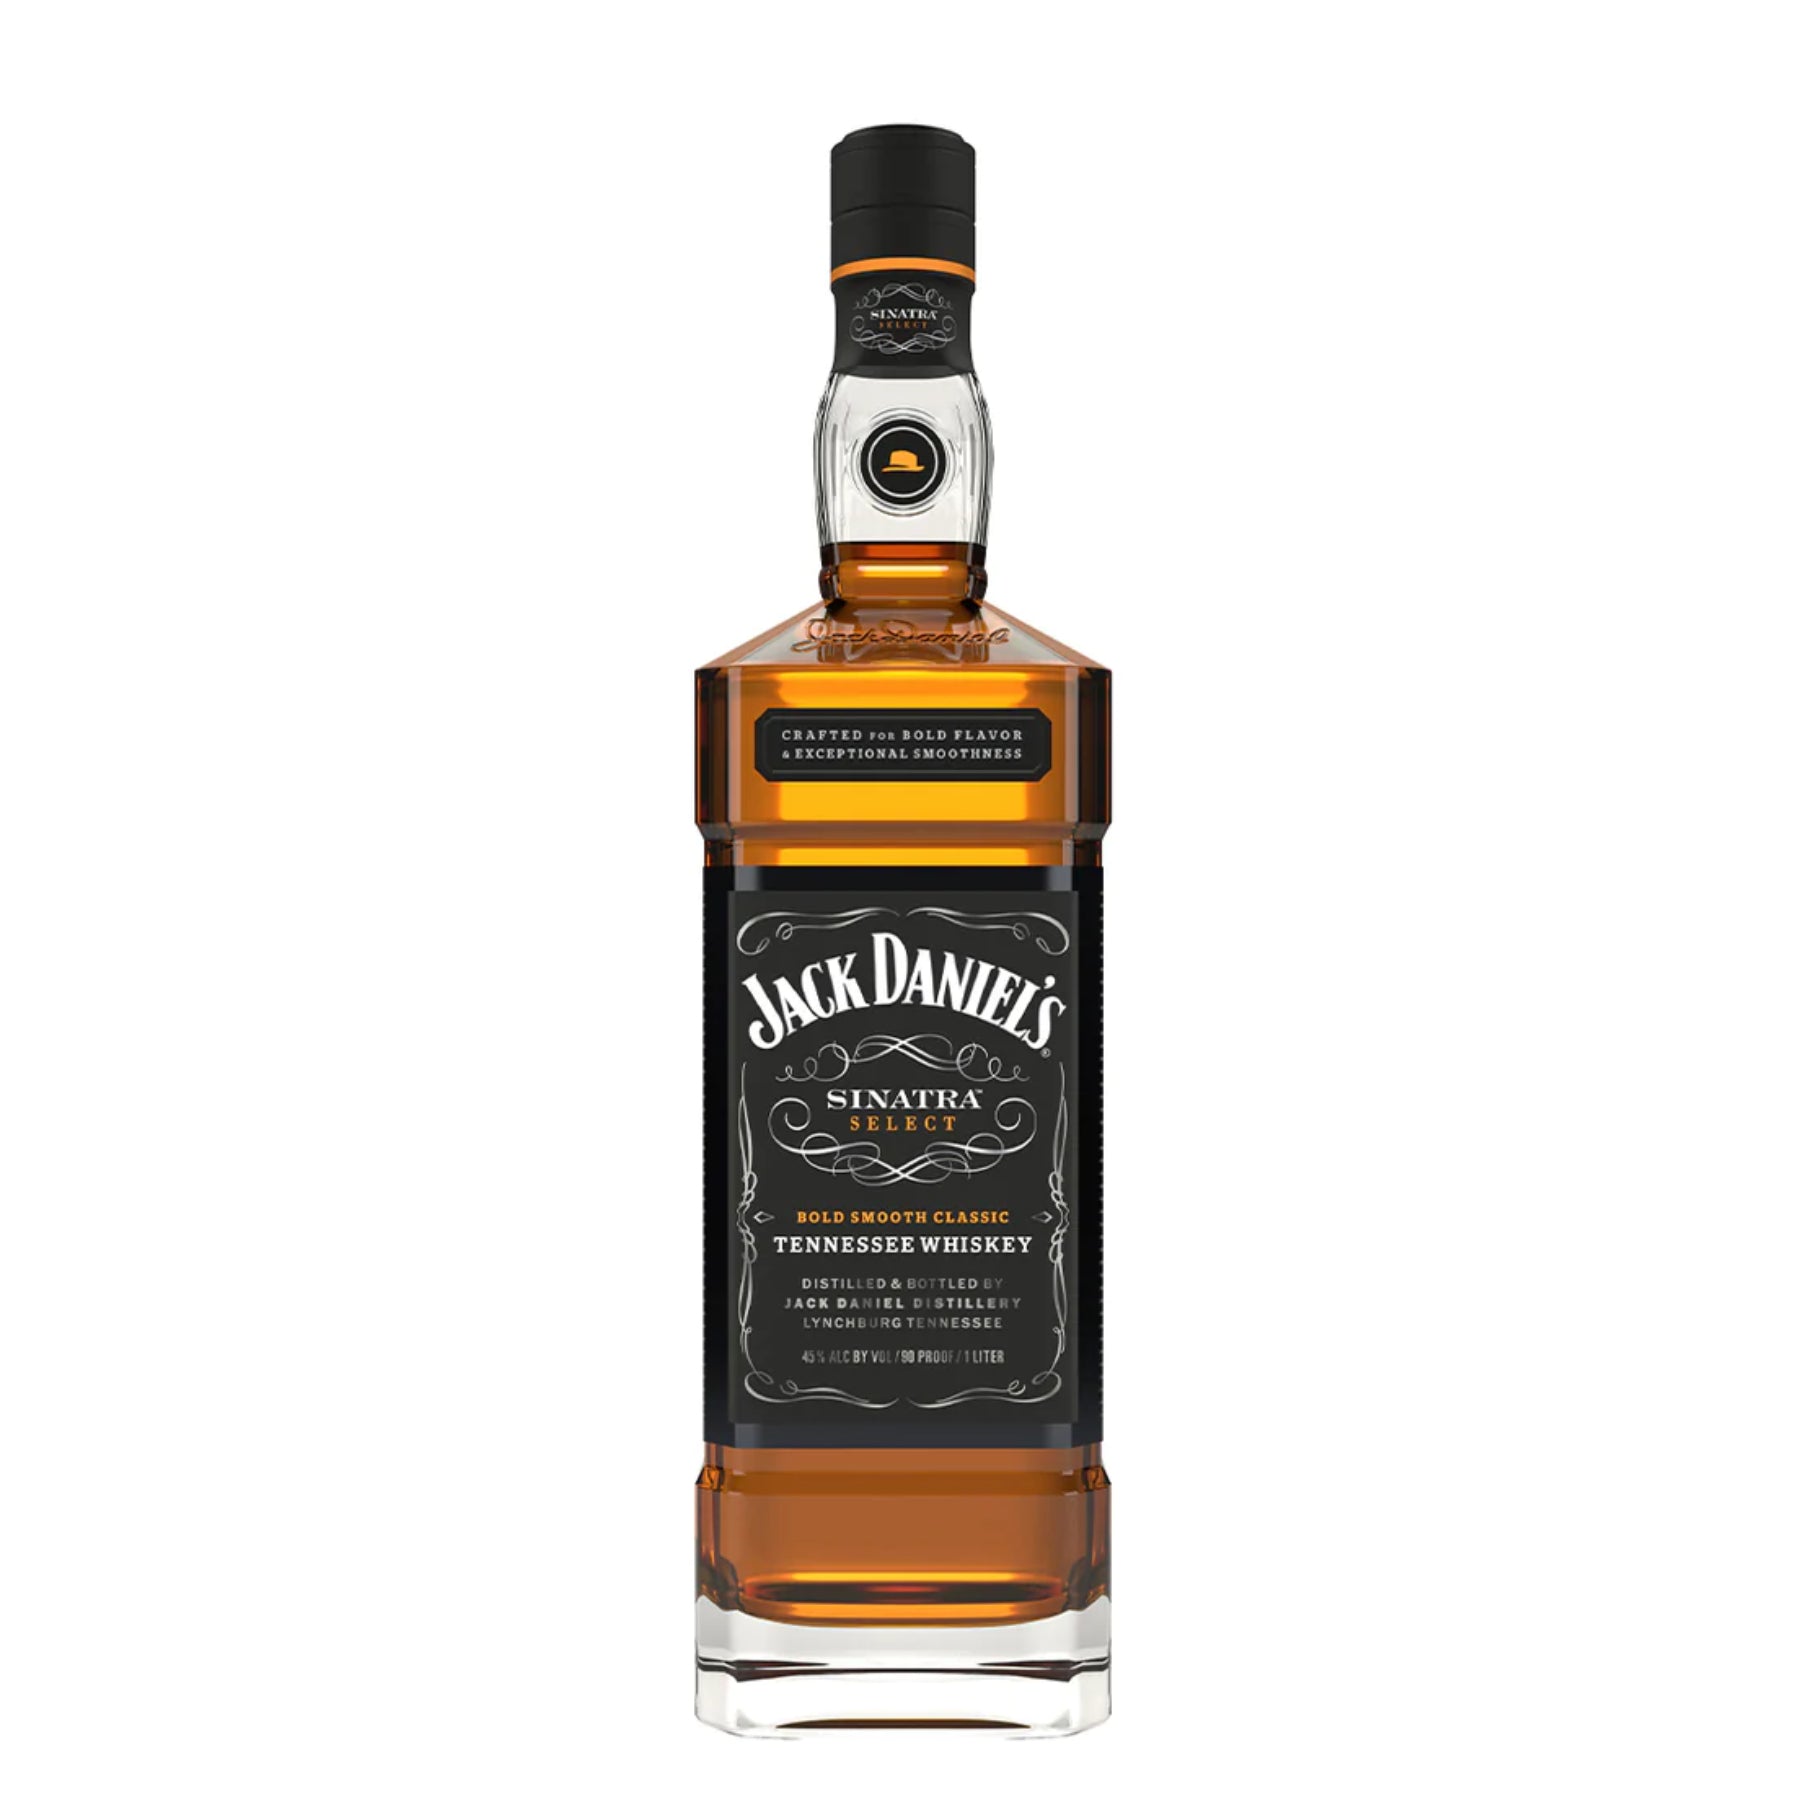 Abasolo whisky review, Whiskey Jake